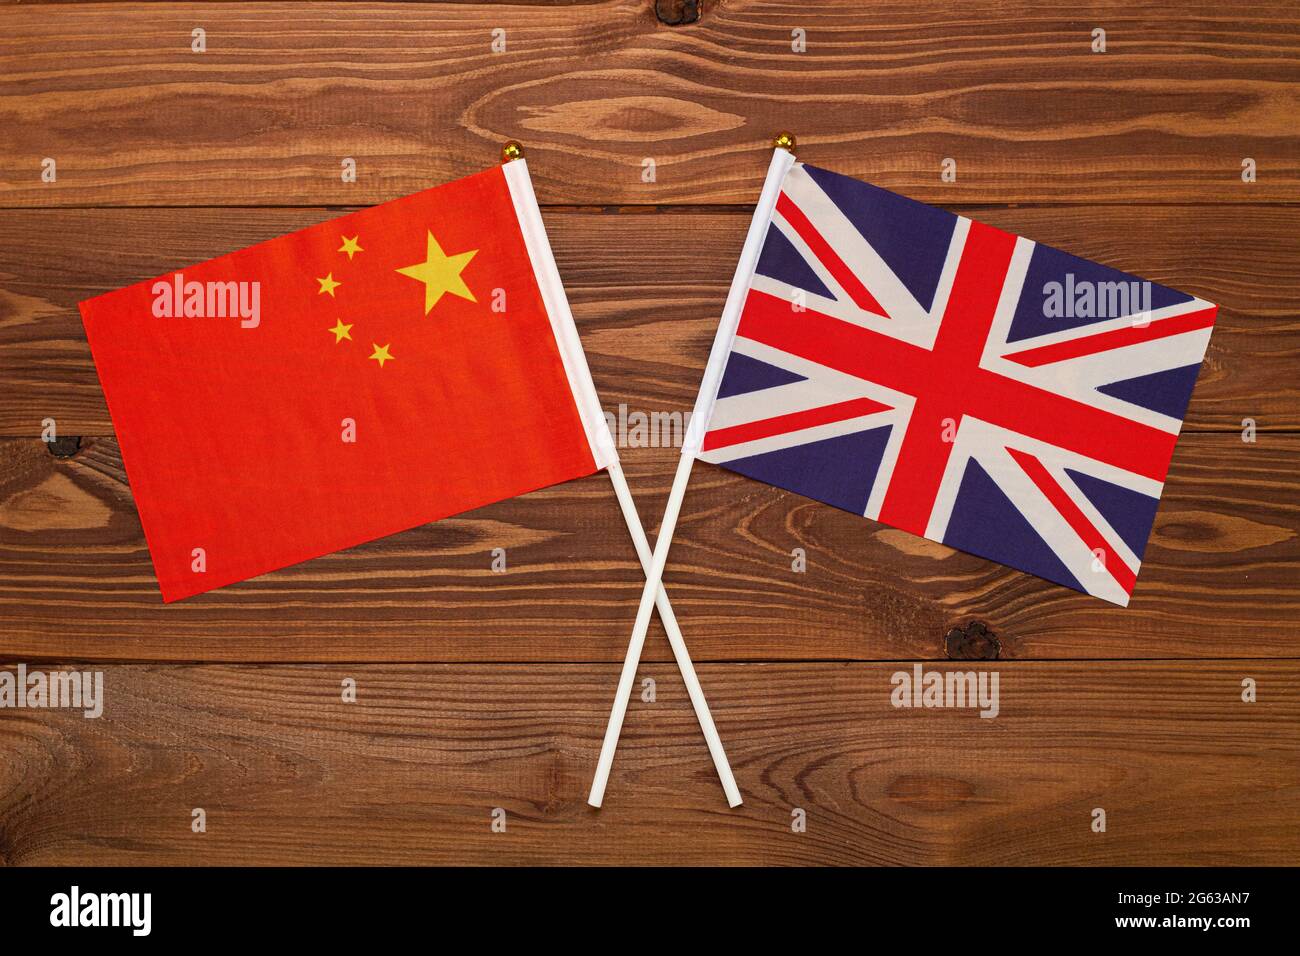 Bandiera della Cina e bandiera della Gran Bretagna si incrociarono. L'immagine illustra il rapporto tra i paesi. Fotografia per notizie Foto Stock